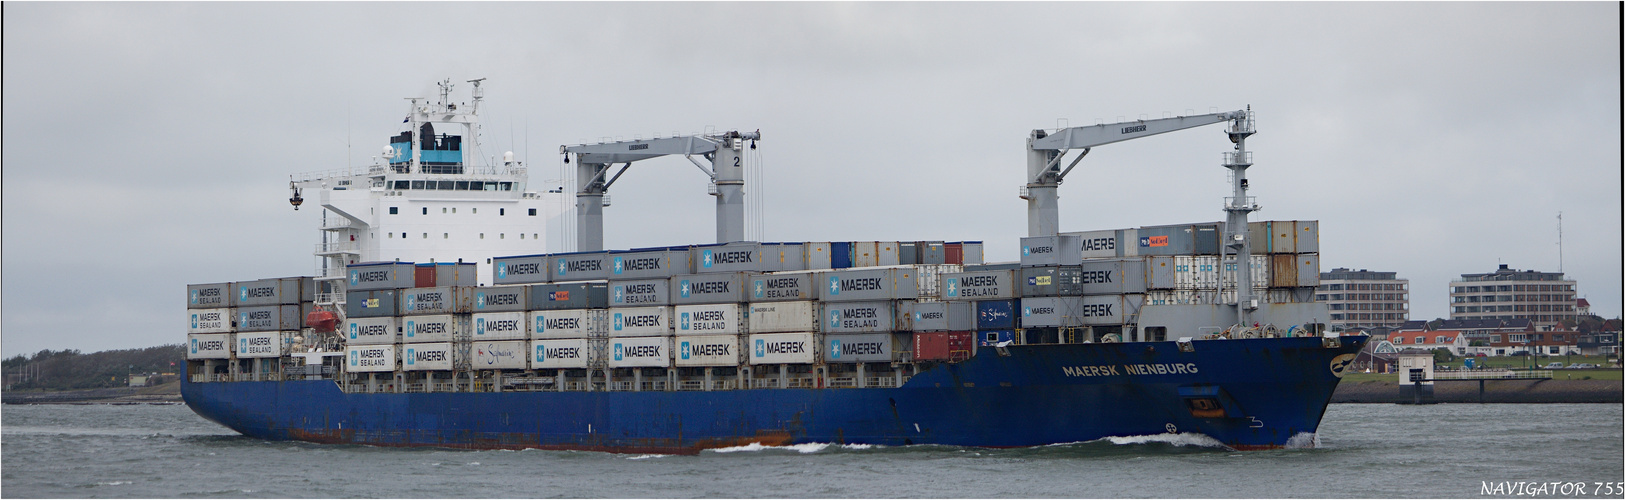 MAERSK NIENBURG / Container vessel / Rotterdam